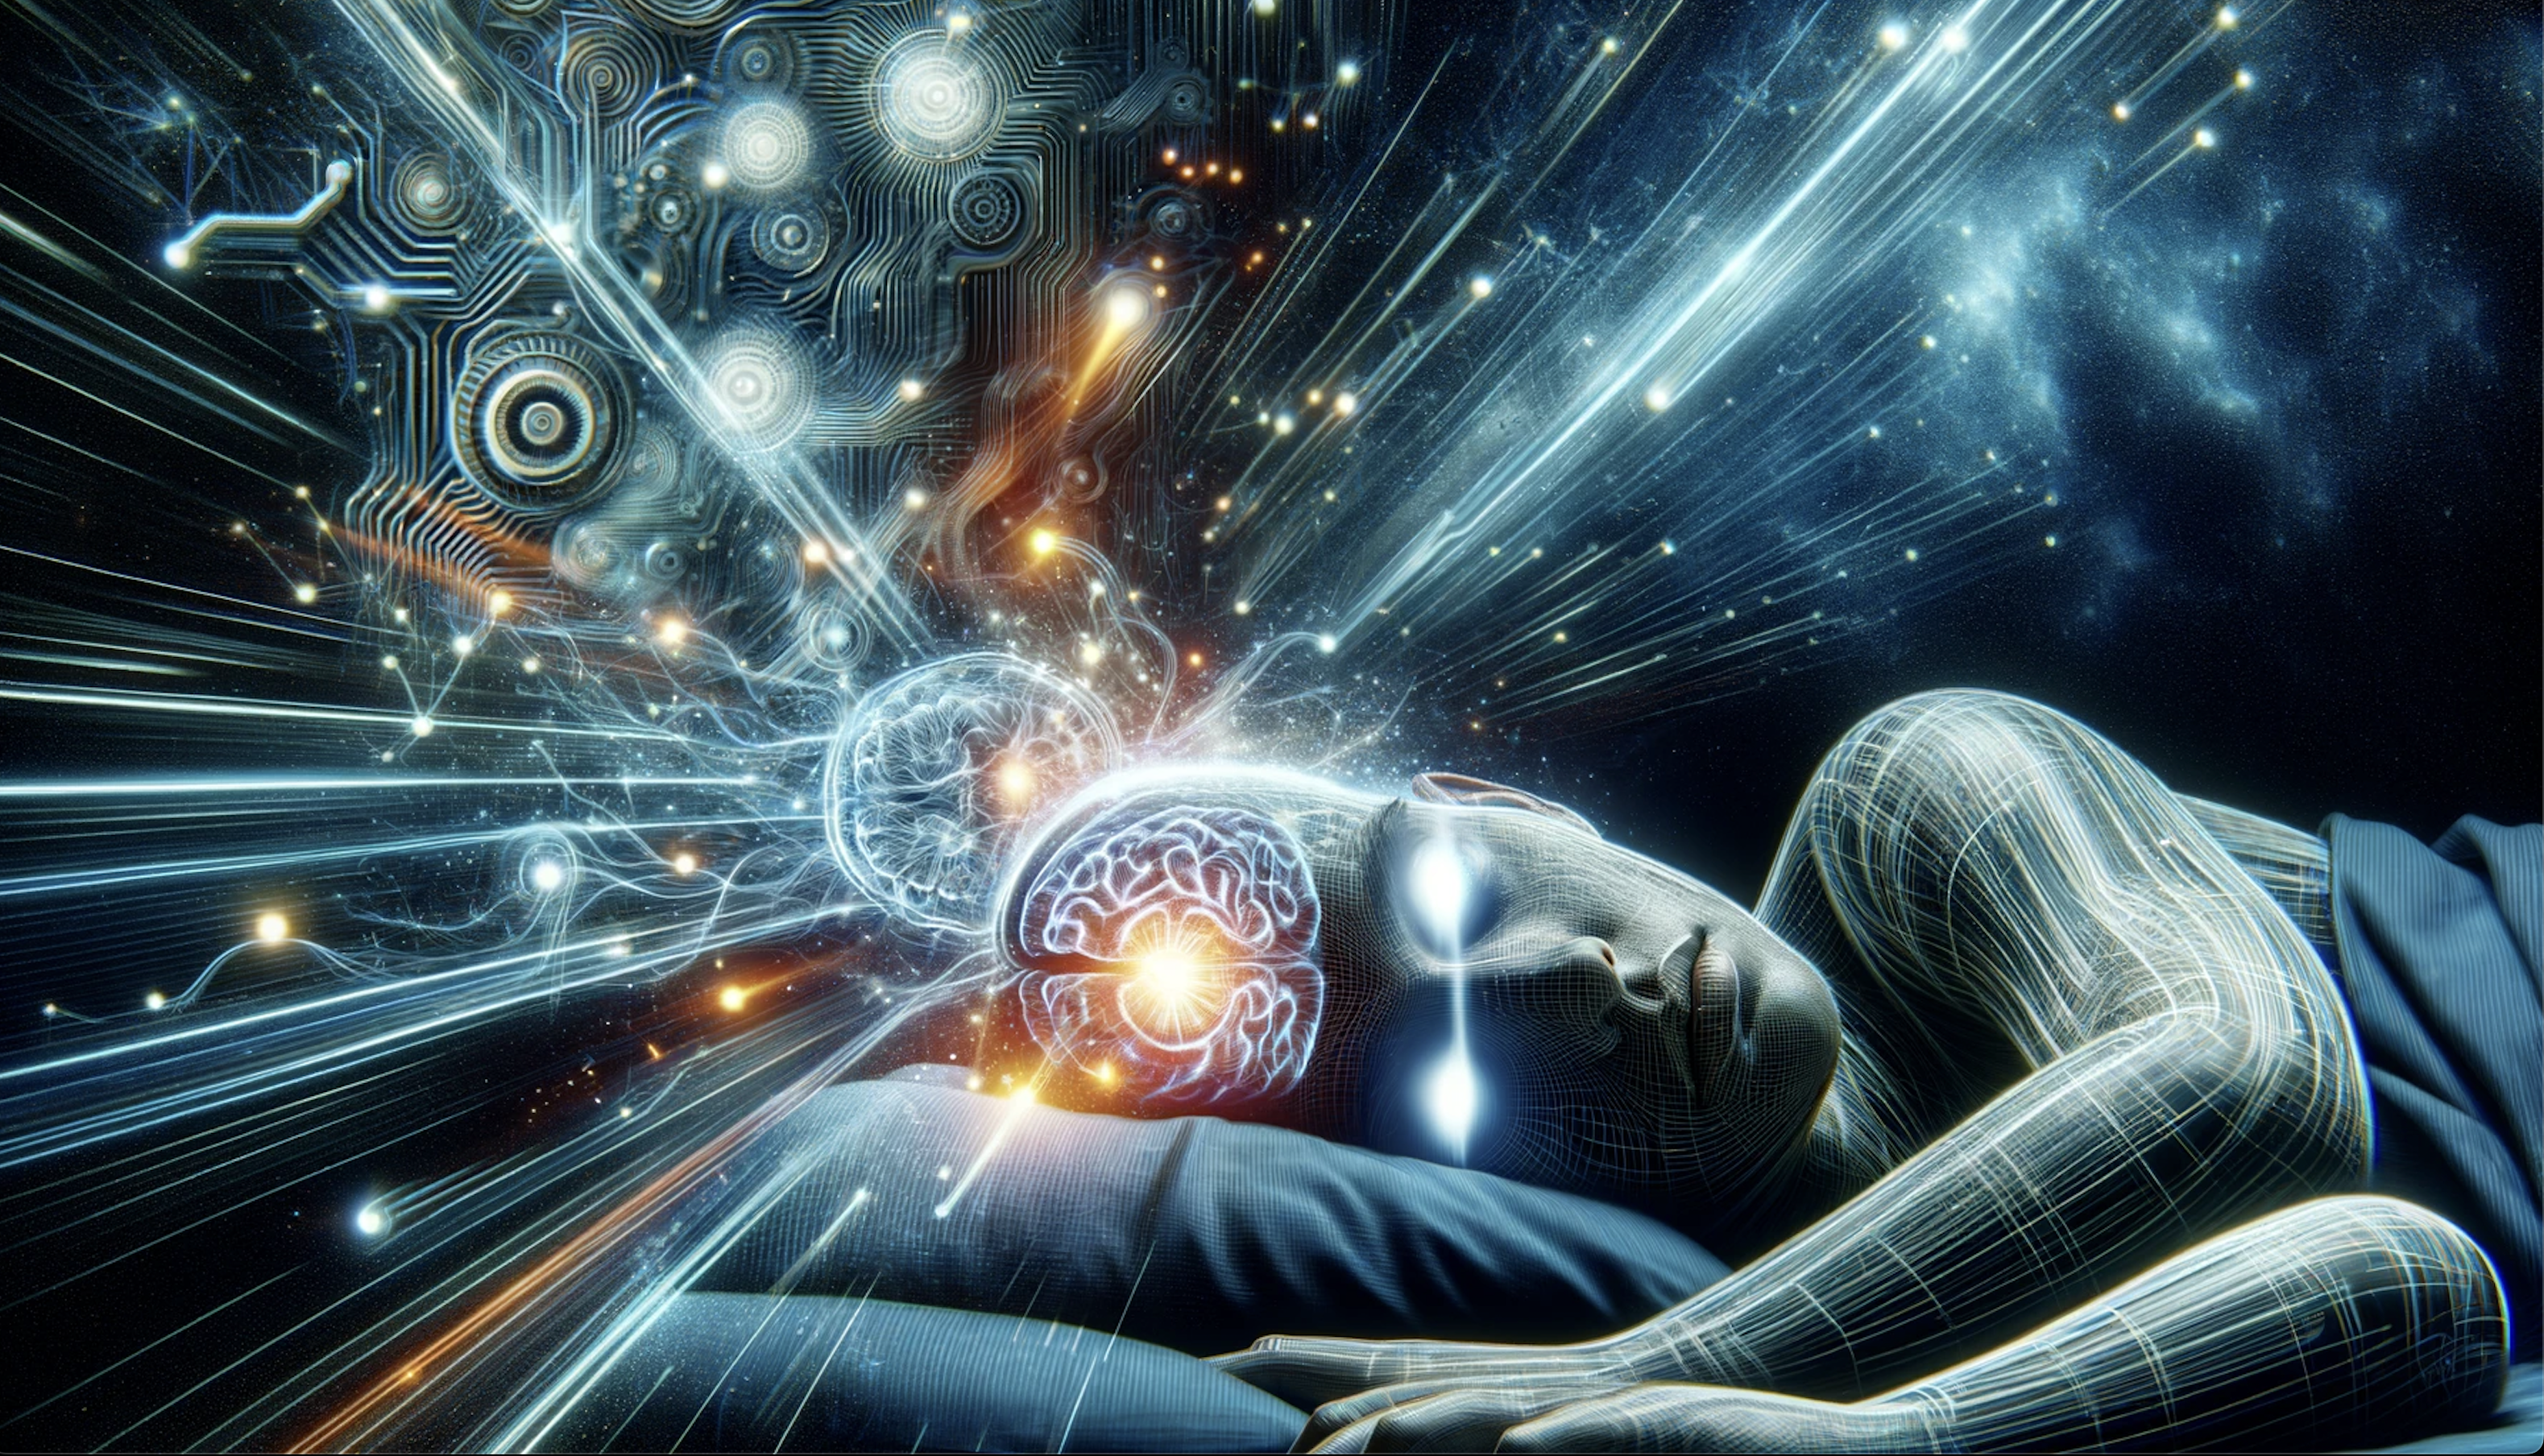 Cyfrowy obraz przedstawiający sylwetkę leżącej osoby z połączeniem wzorów przypominających układy elektroniczne i jasnych świetlistych strumieni wydobywających się z głowy postaci w kierunku kosmicznego tła.